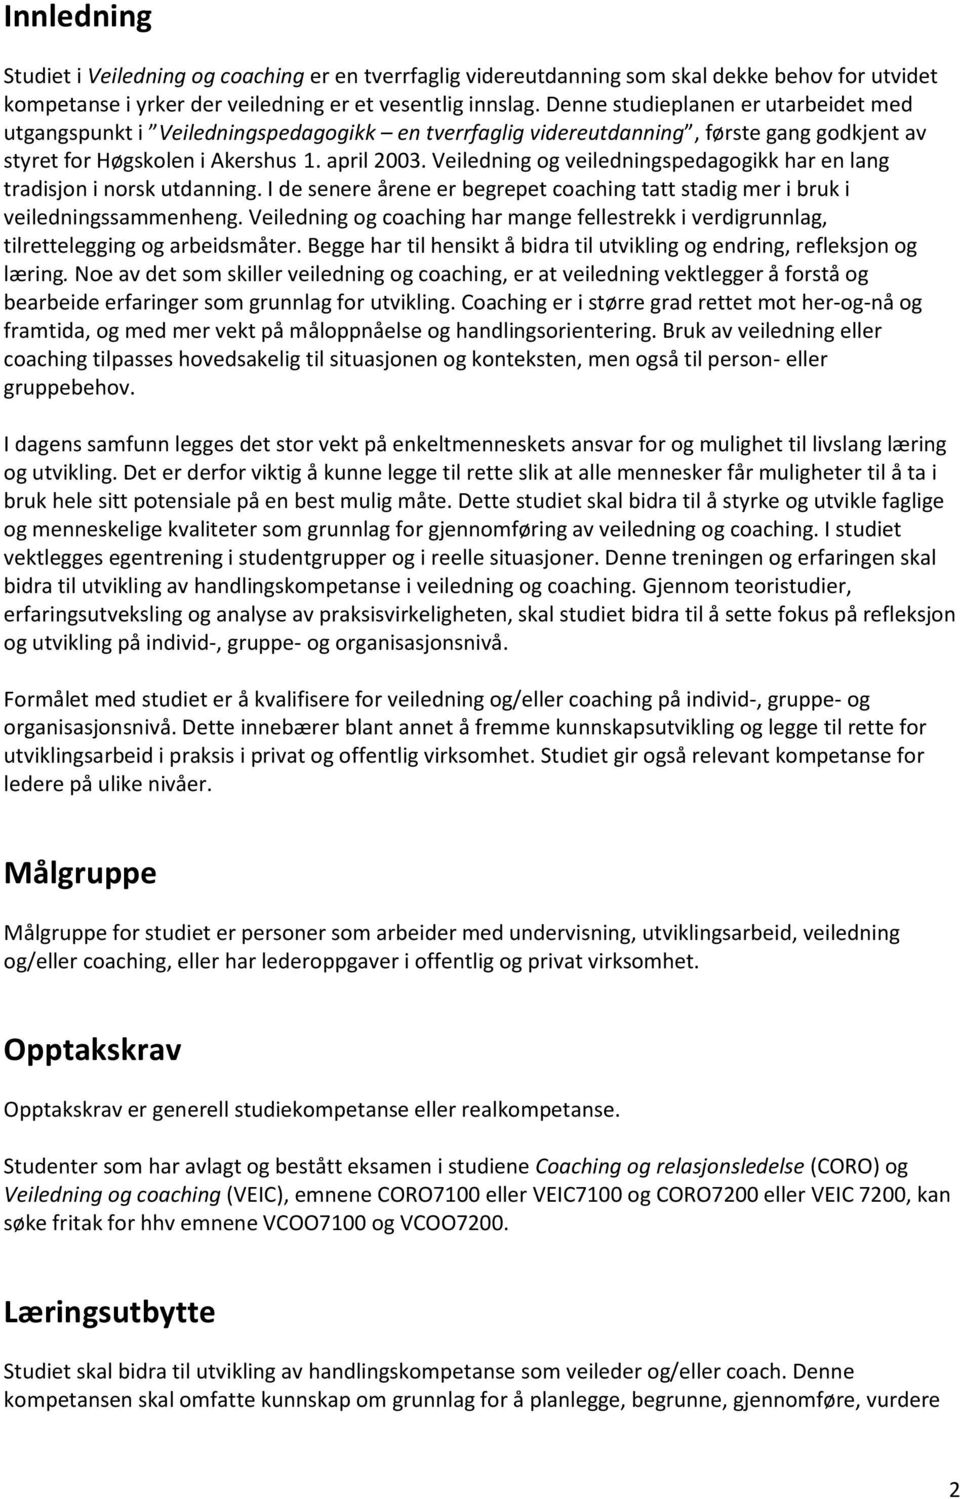 Veiledning og veiledningspedagogikk har en lang tradisjon i norsk utdanning. I de senere årene er begrepet coaching tatt stadig mer i bruk i veiledningssammenheng.